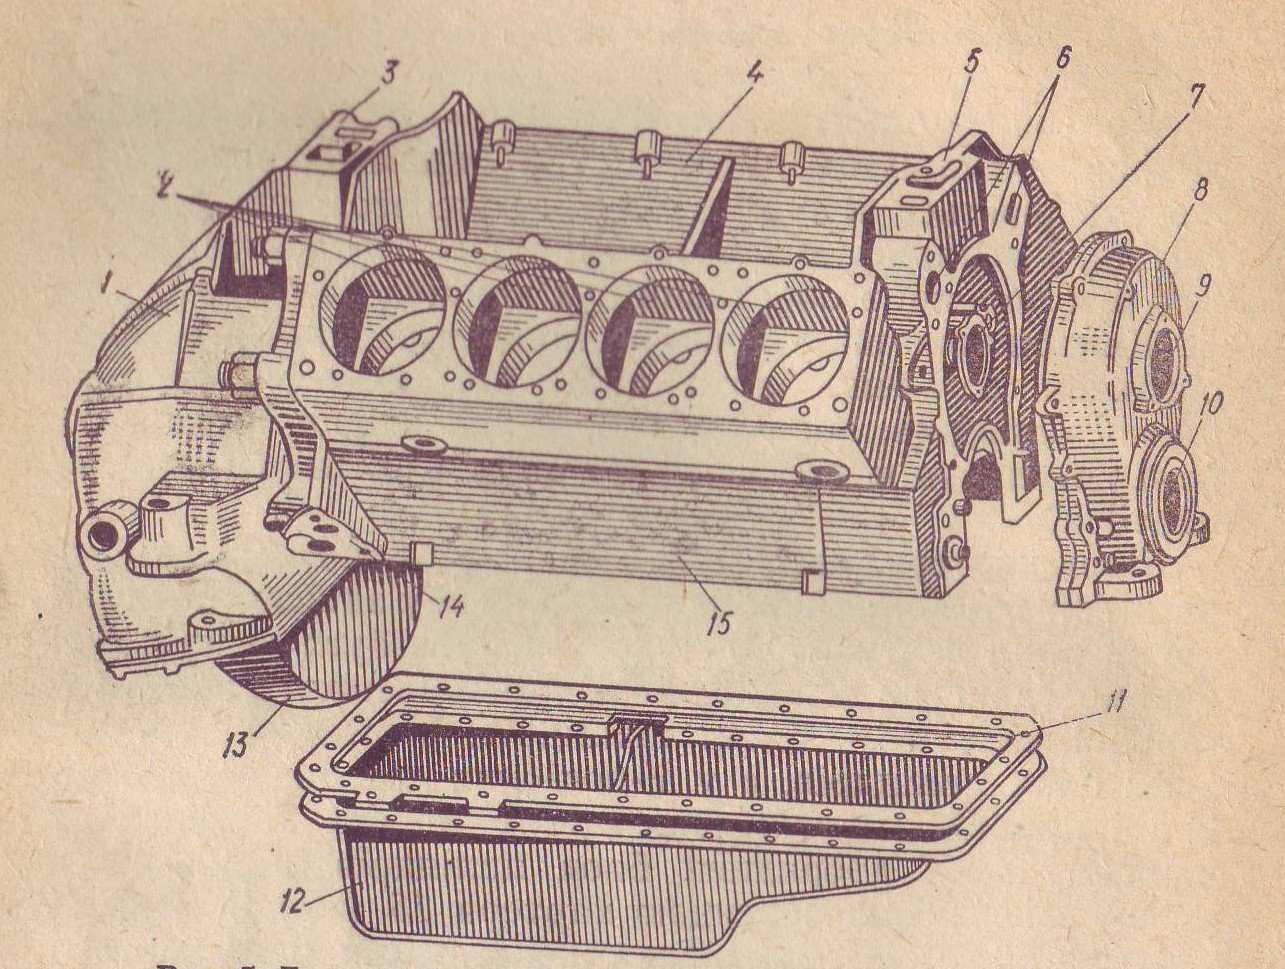 Схема двигателя